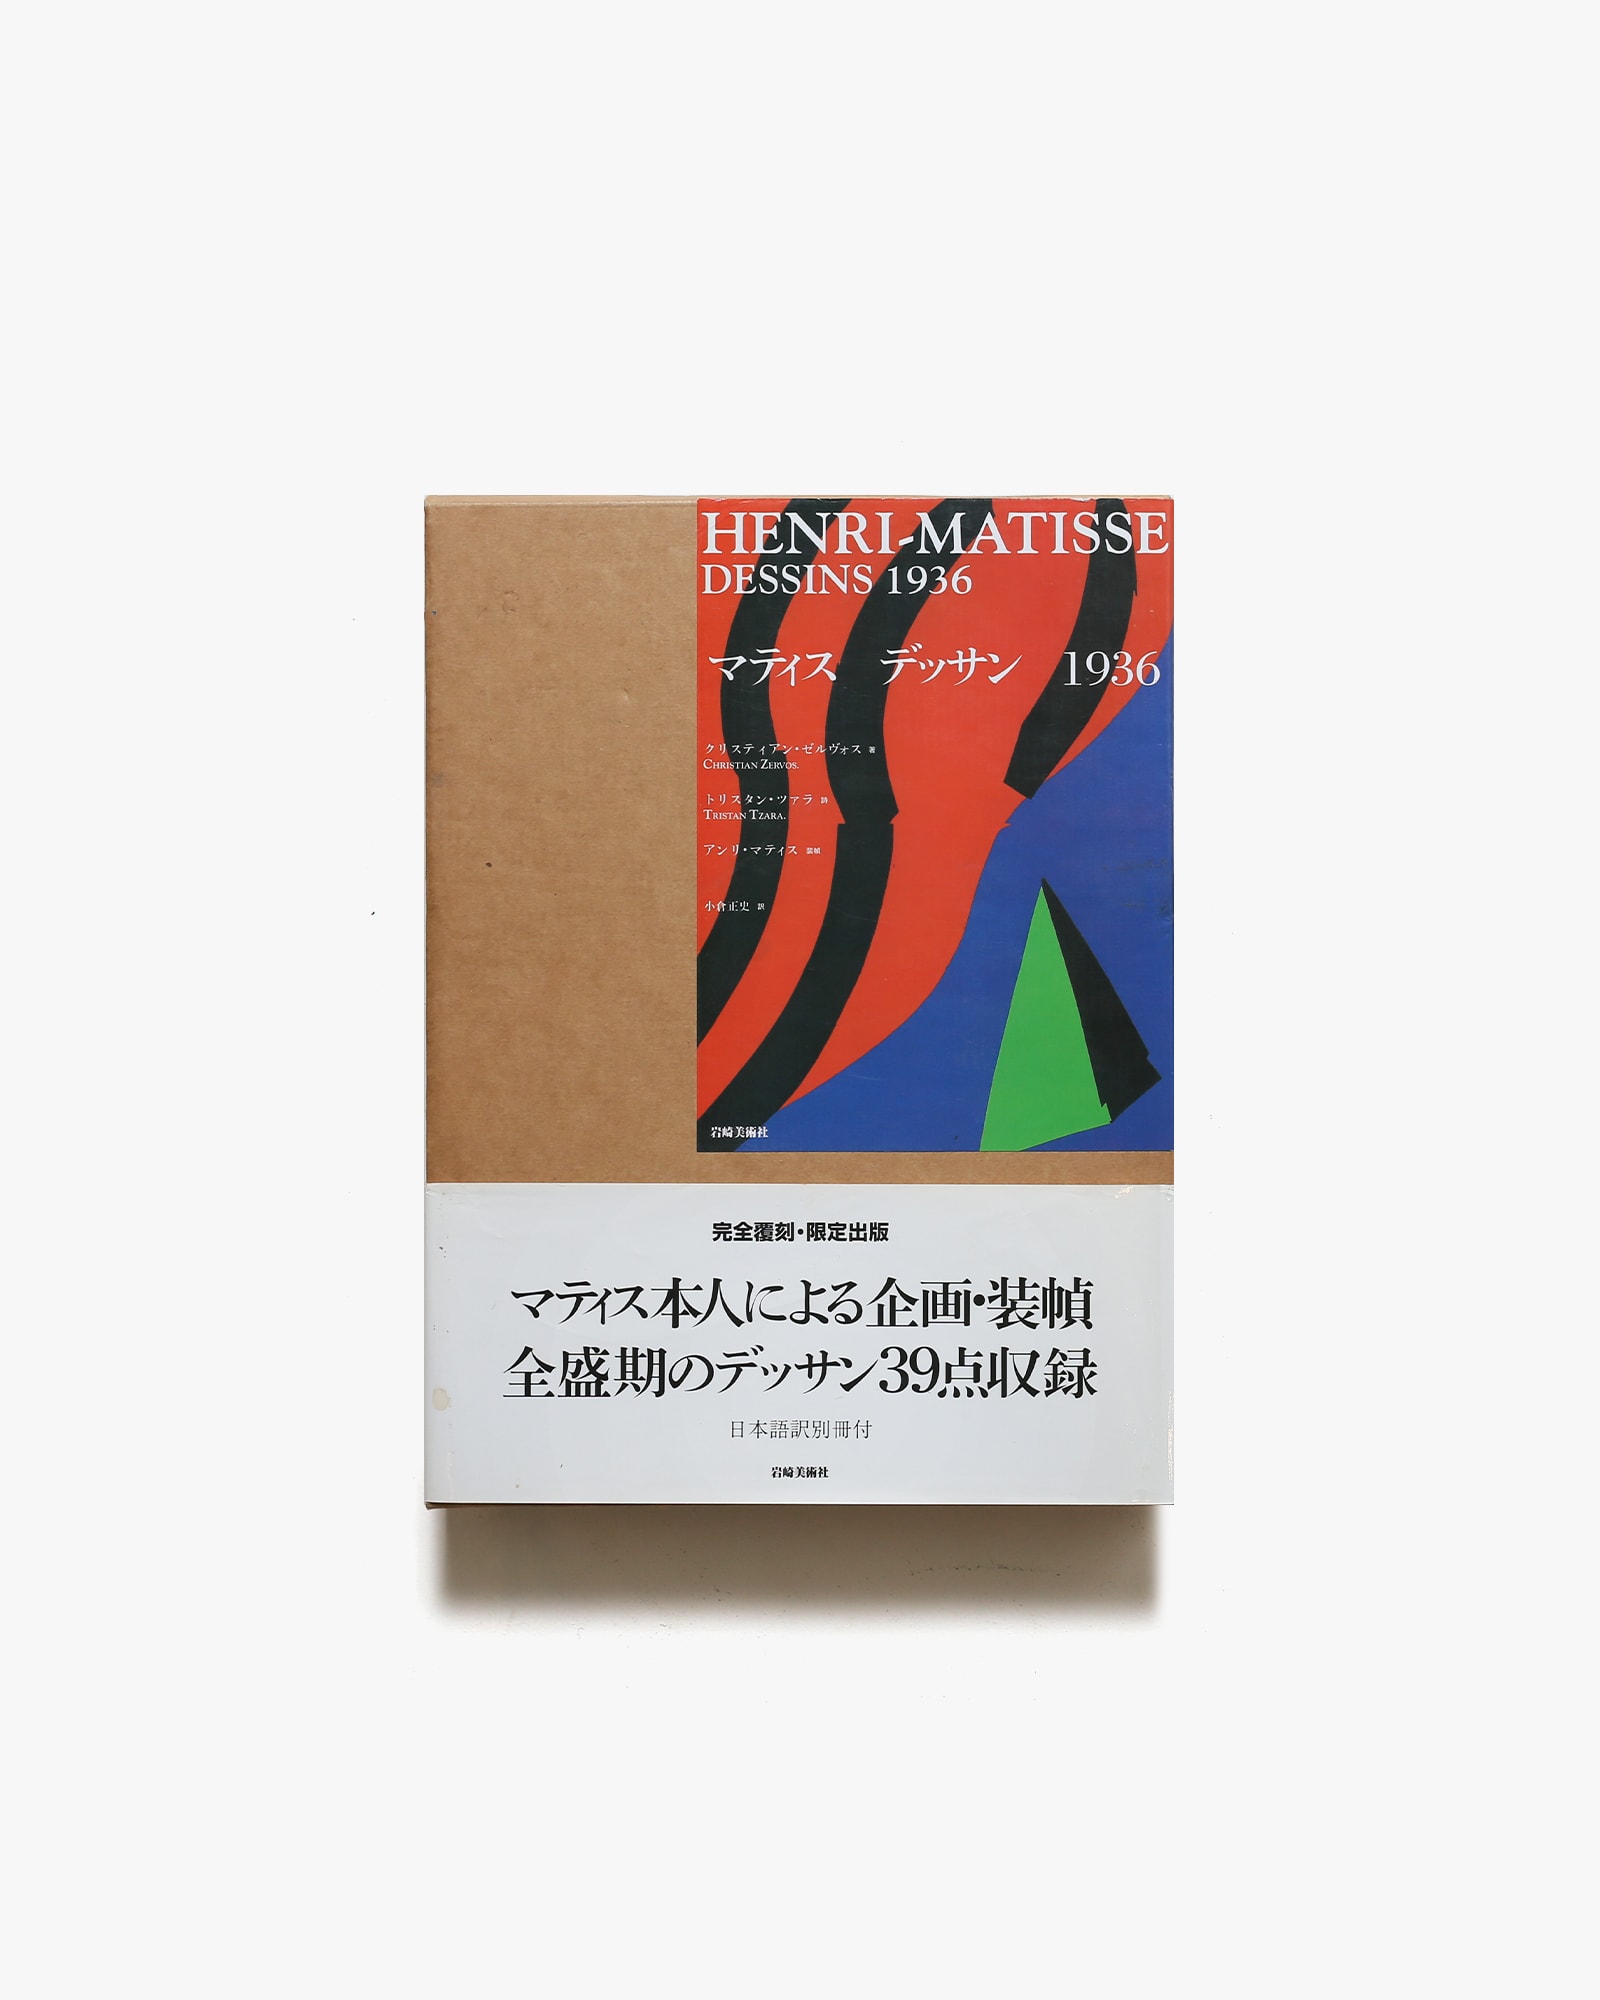 気質アップ 【画集】マティスデッサン1936 日本語訳別冊付き アート 